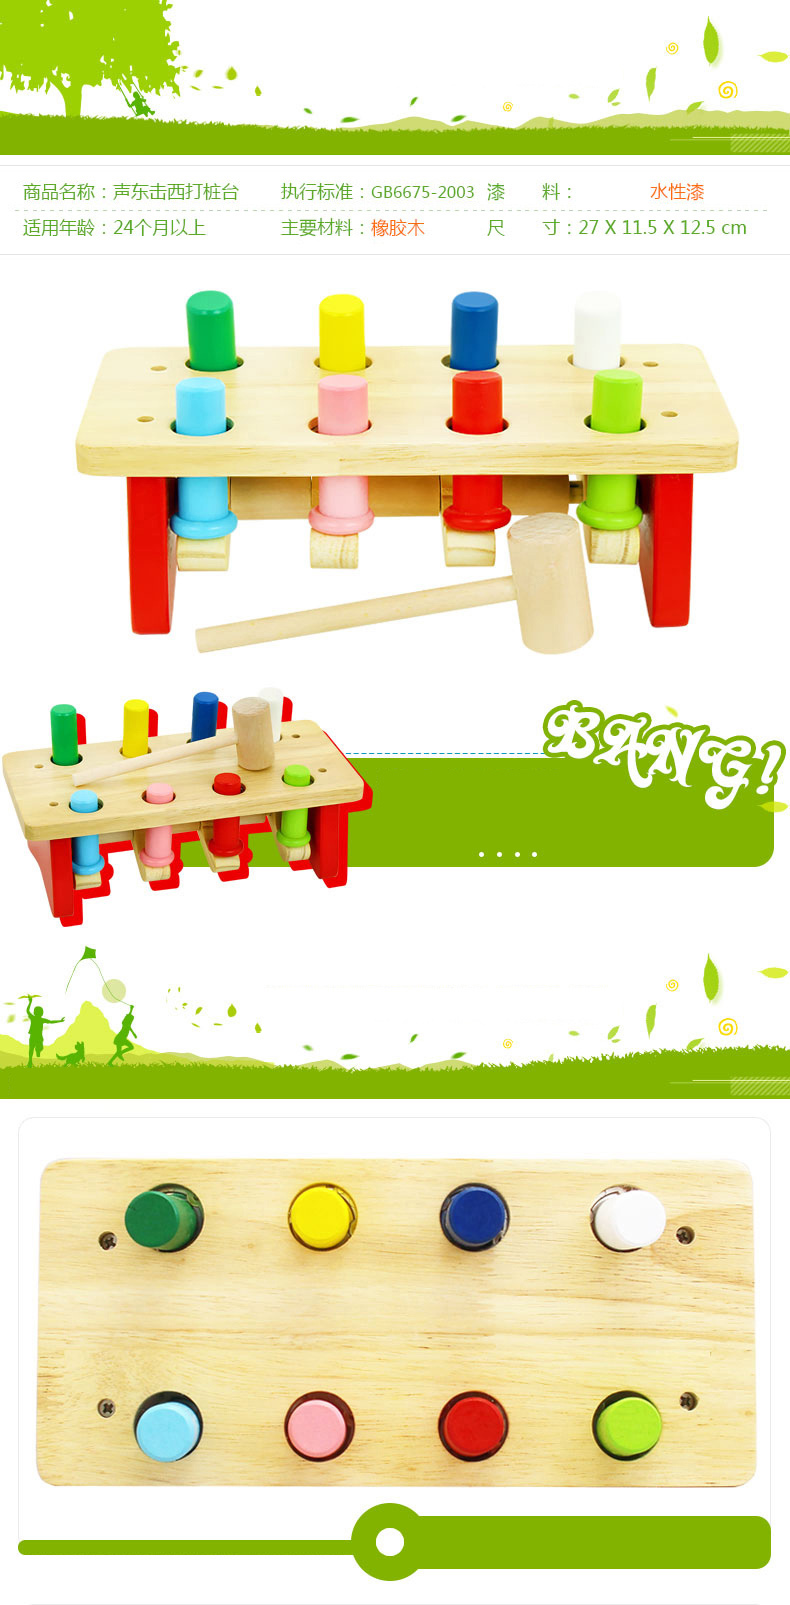 木玩世家 声东击西打桩台 QJH8000 敲打台玩具 木制儿童早教益智敲击台